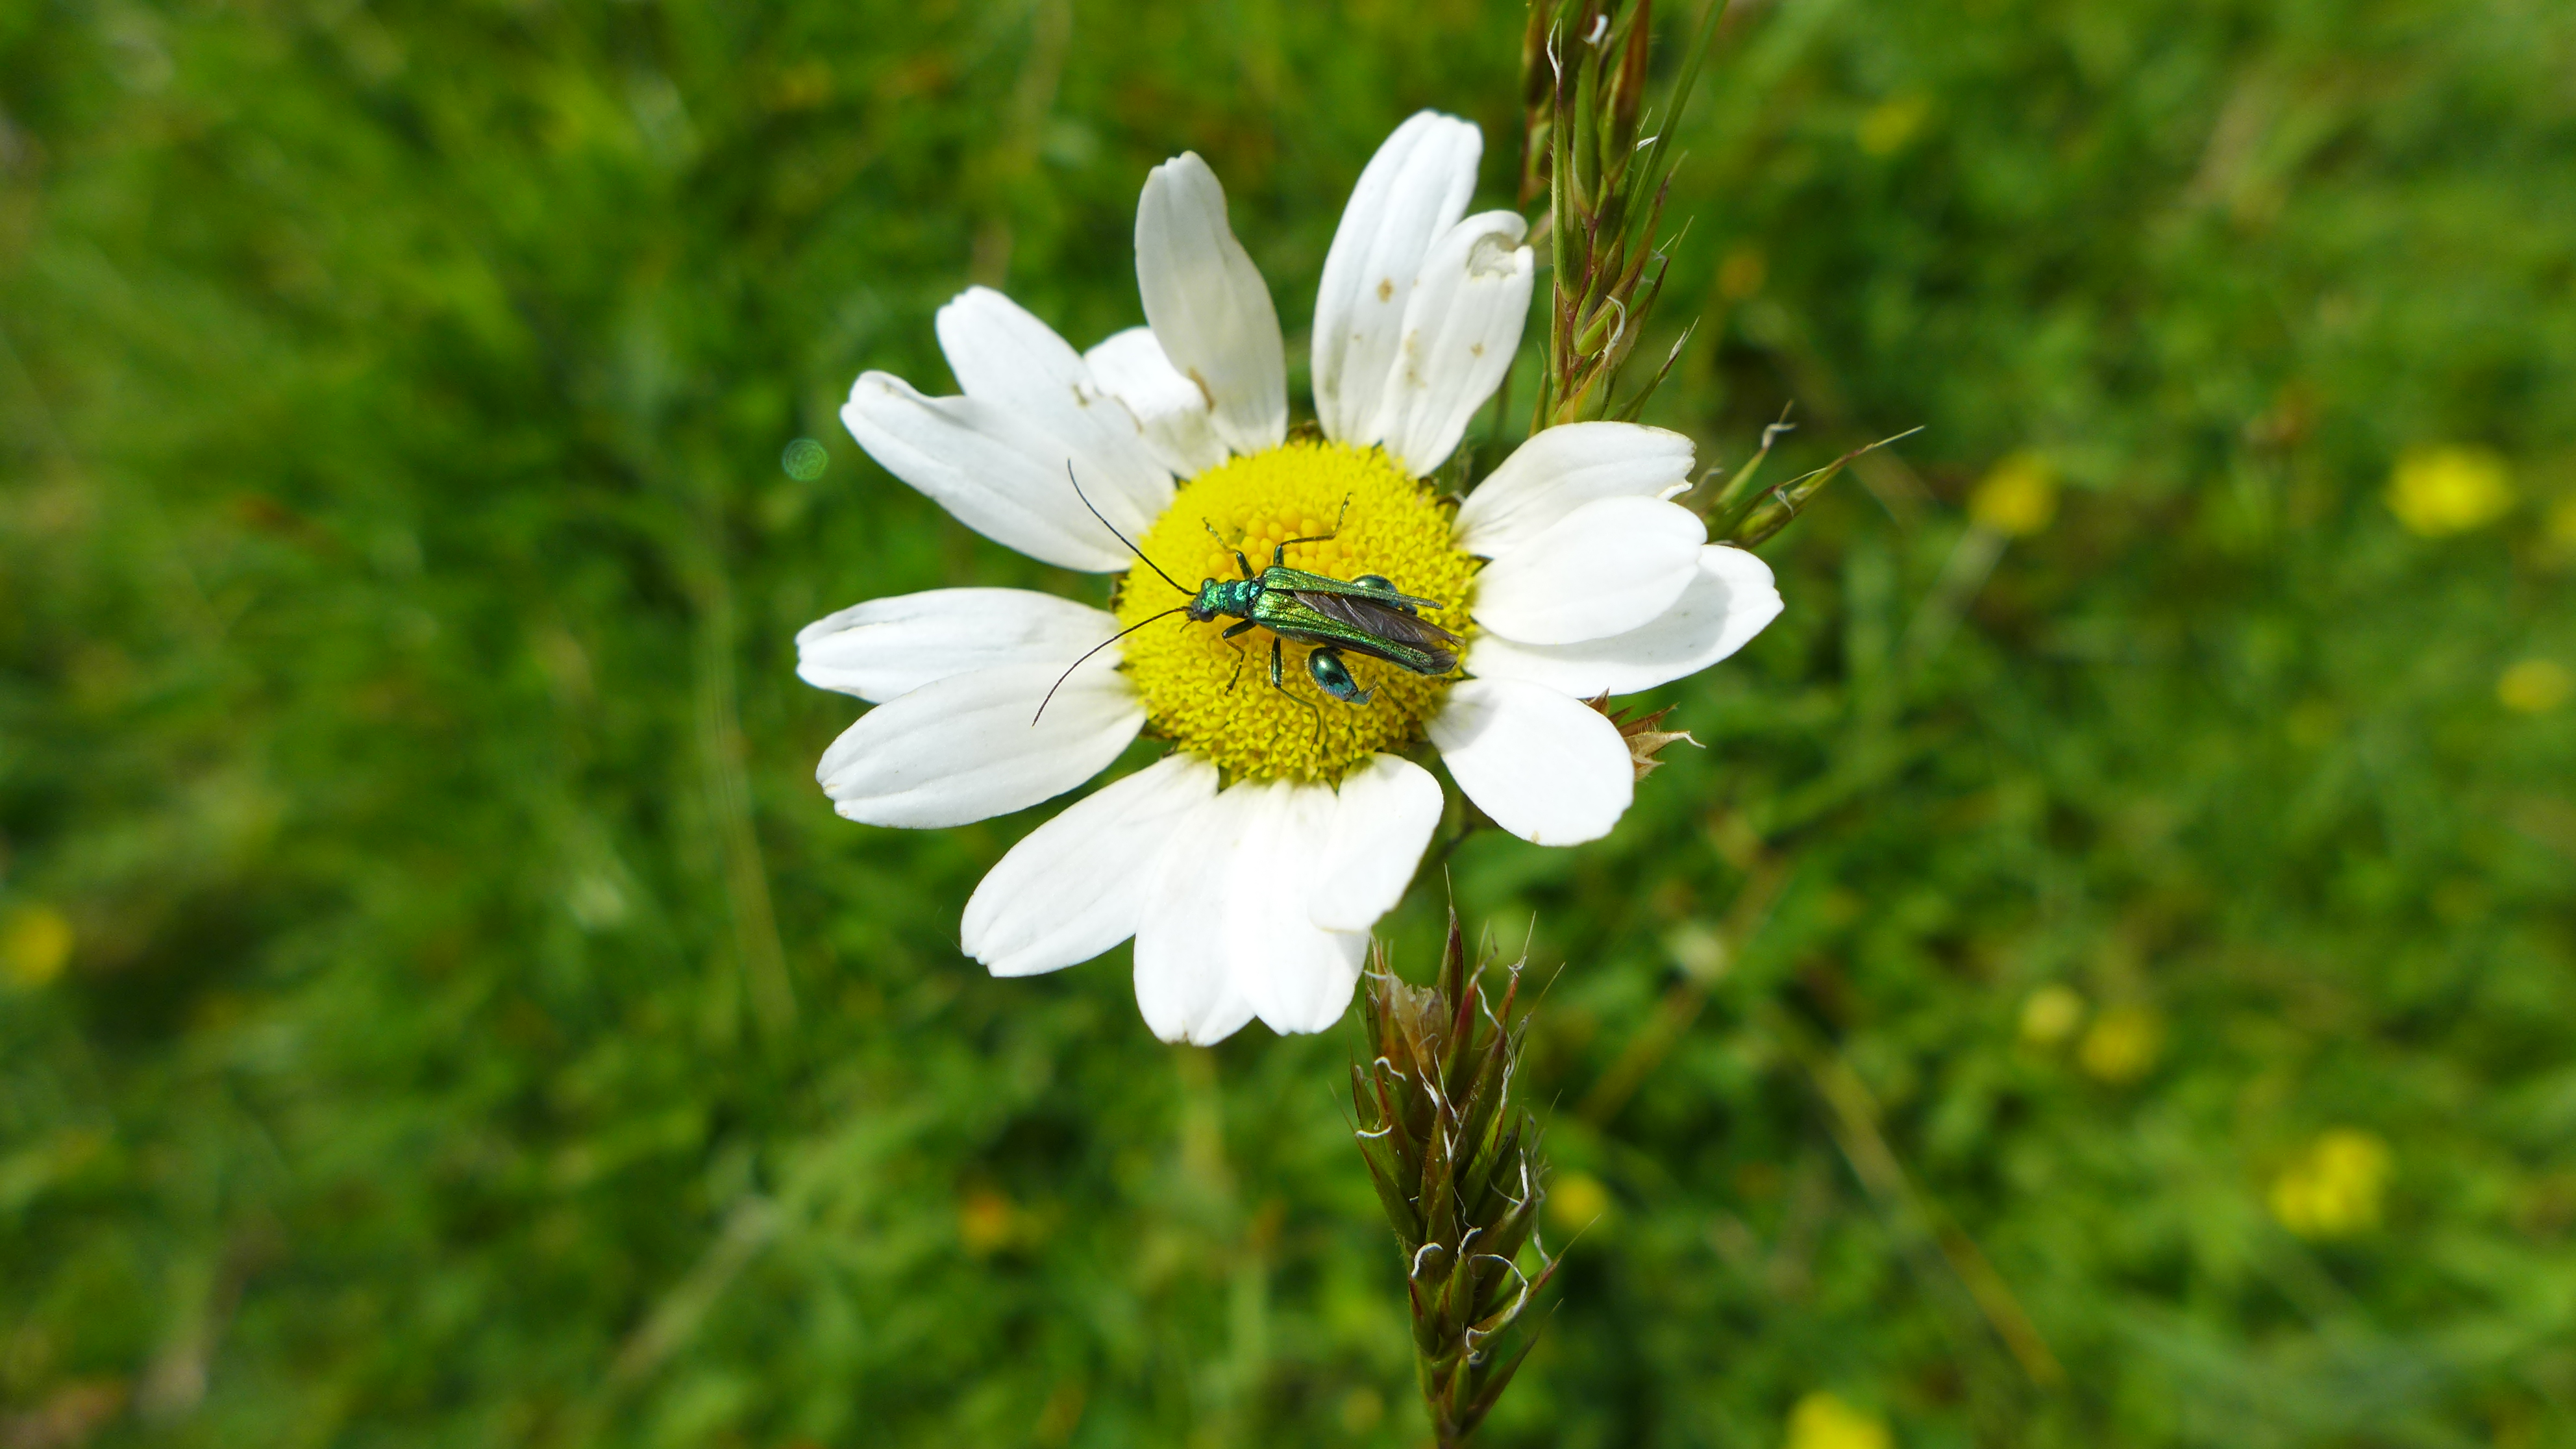 Thick legged flower beetle